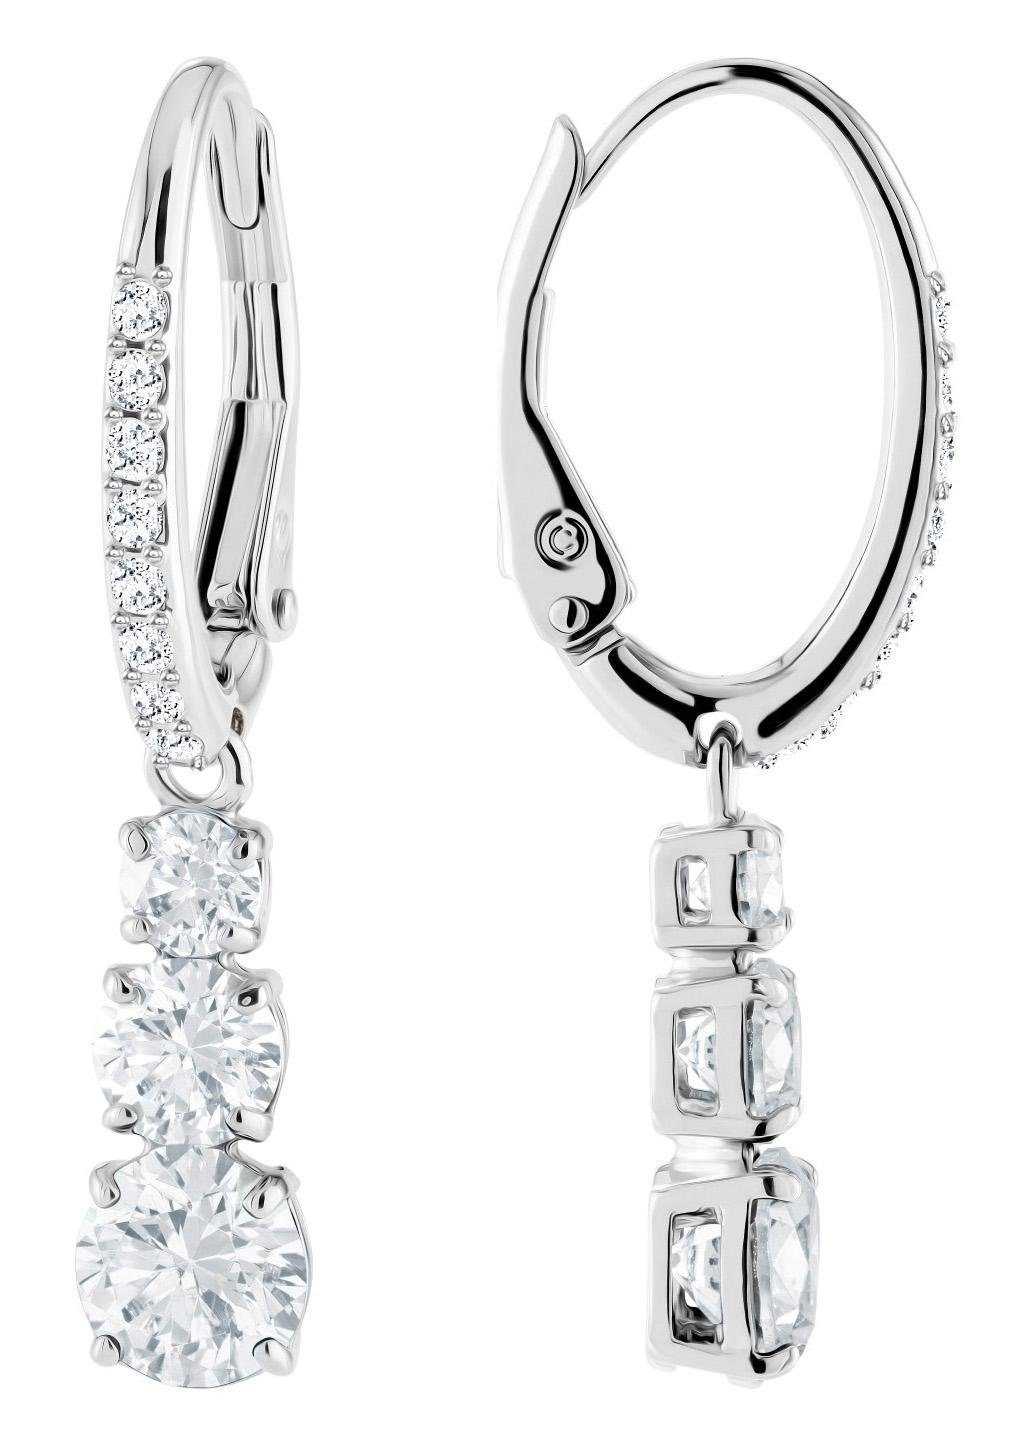 Swarovski Paar Swarovski® Kristallen weiss, Attract Round, 5416155, rhodiniert, Trilogy mit Ohrhänger